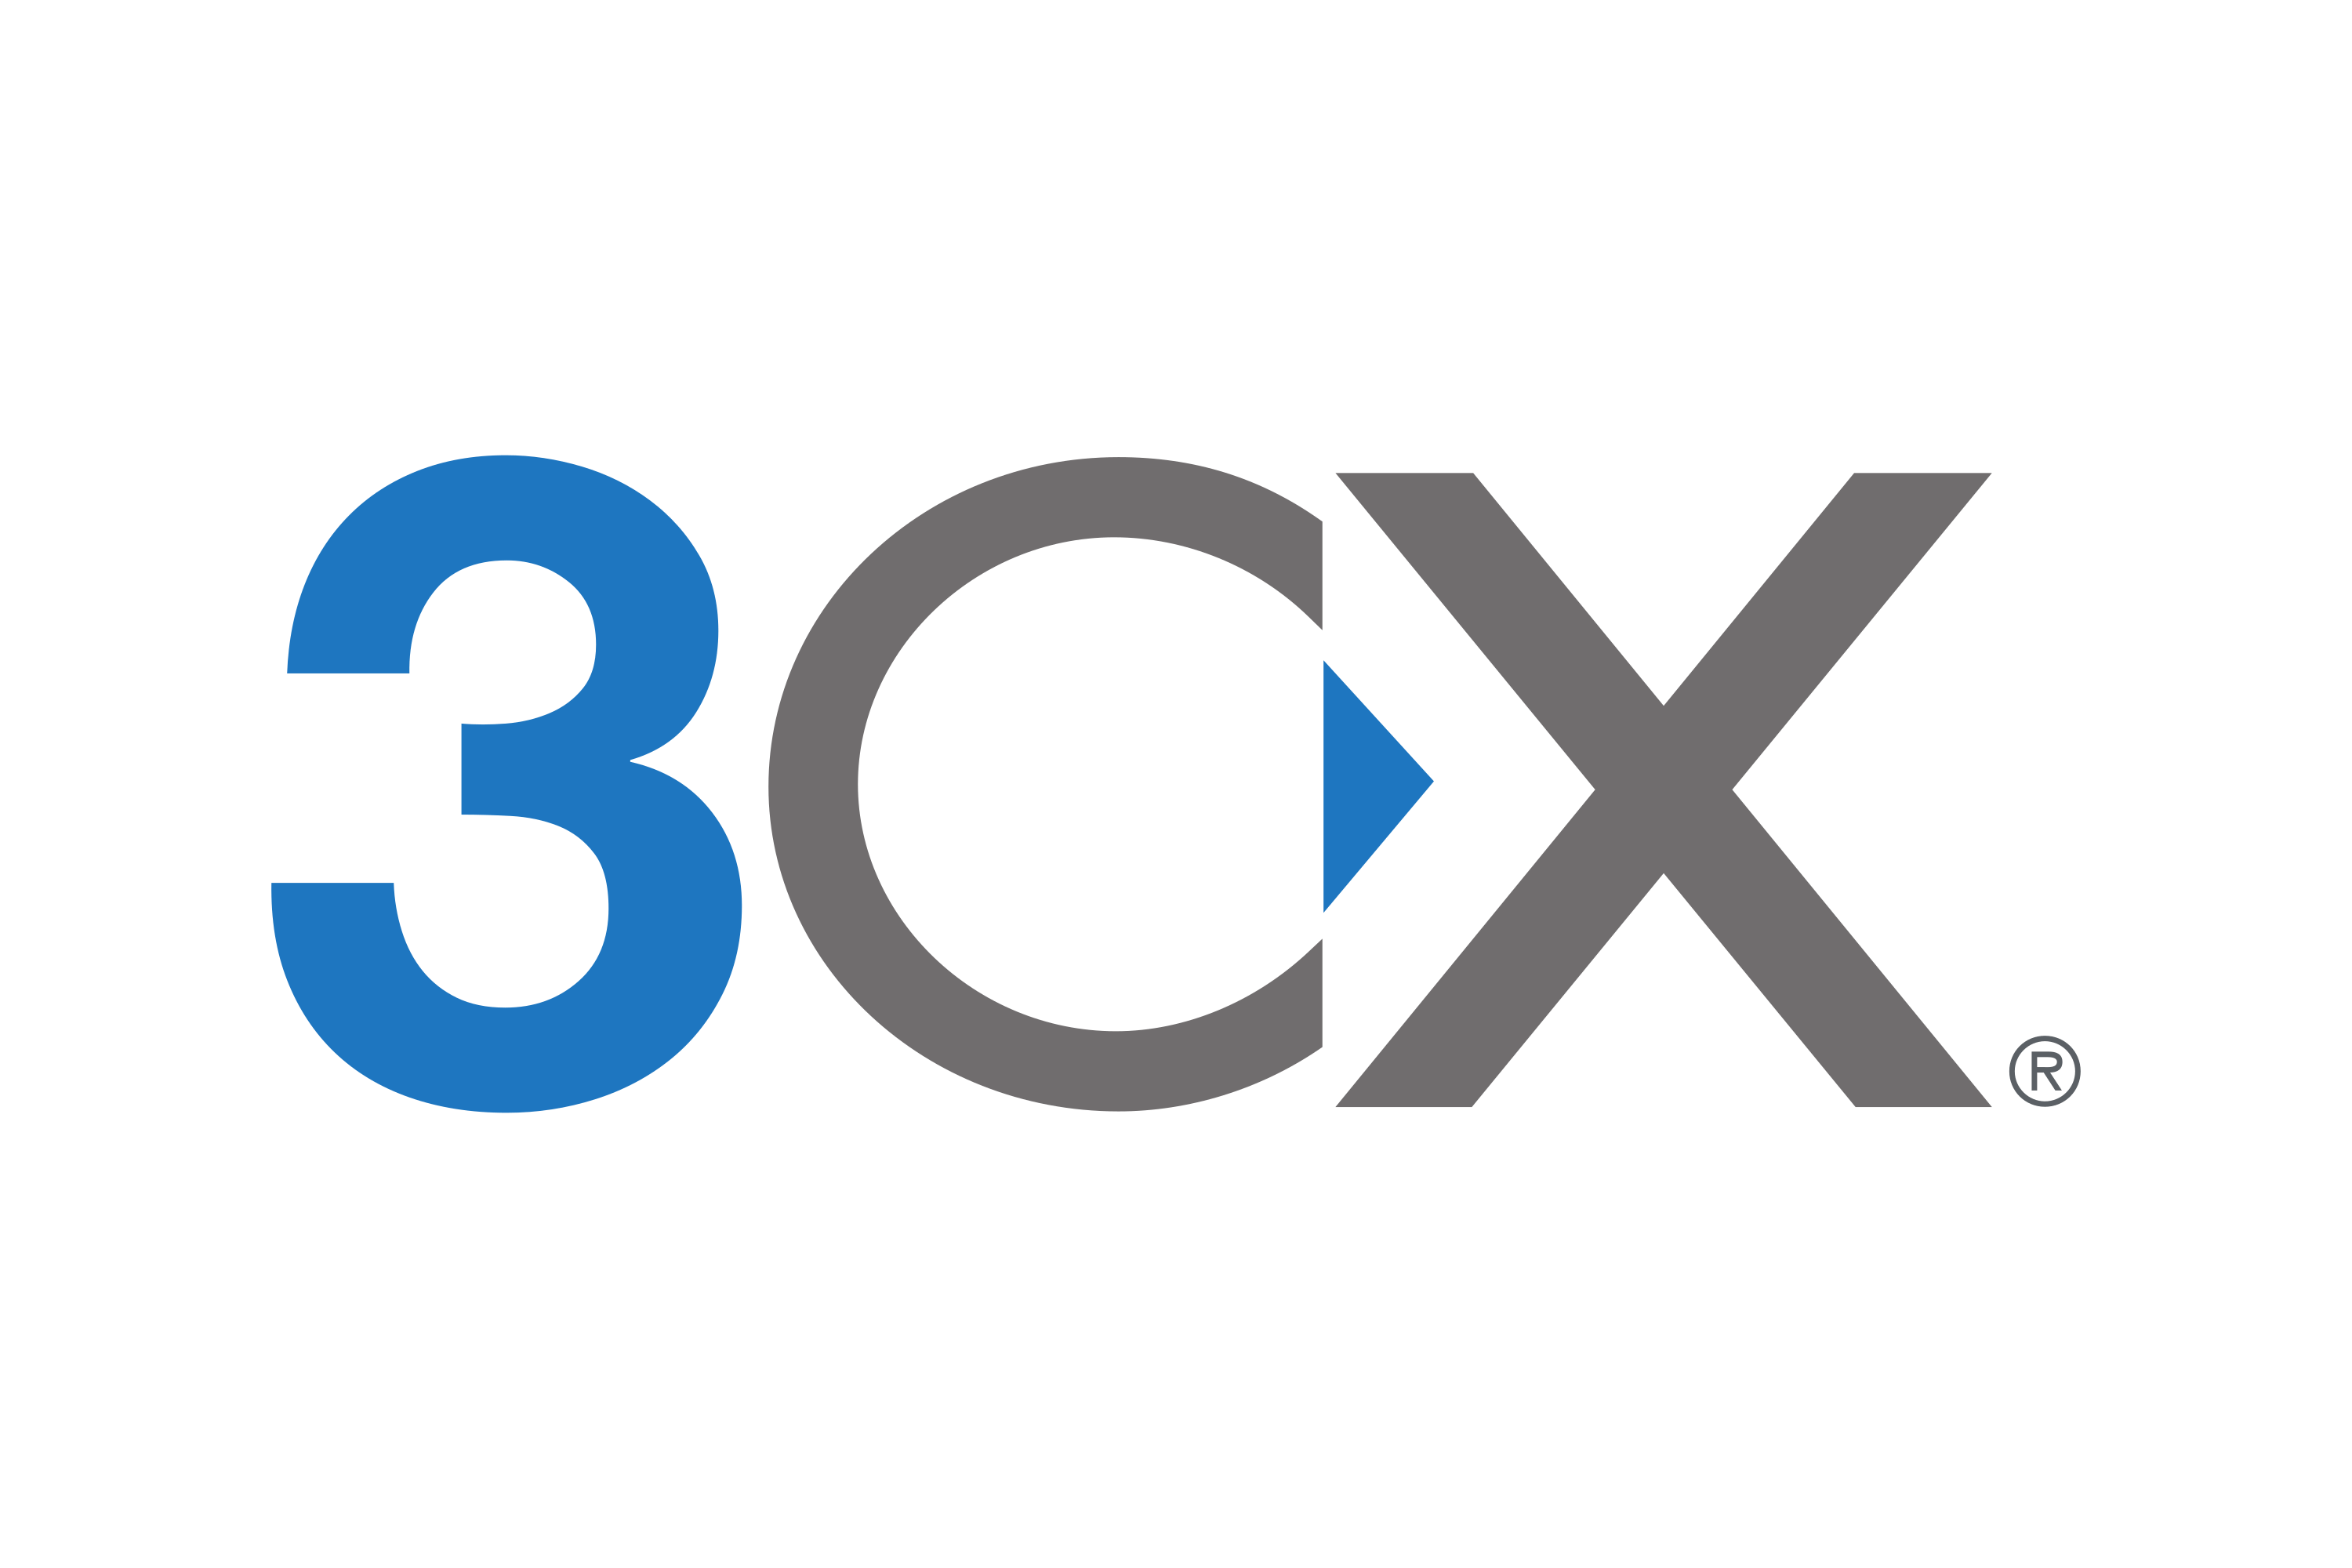 Три сх. 3cx logo. CX логотип компании. JCB 3cx logo. 3cx Windows.